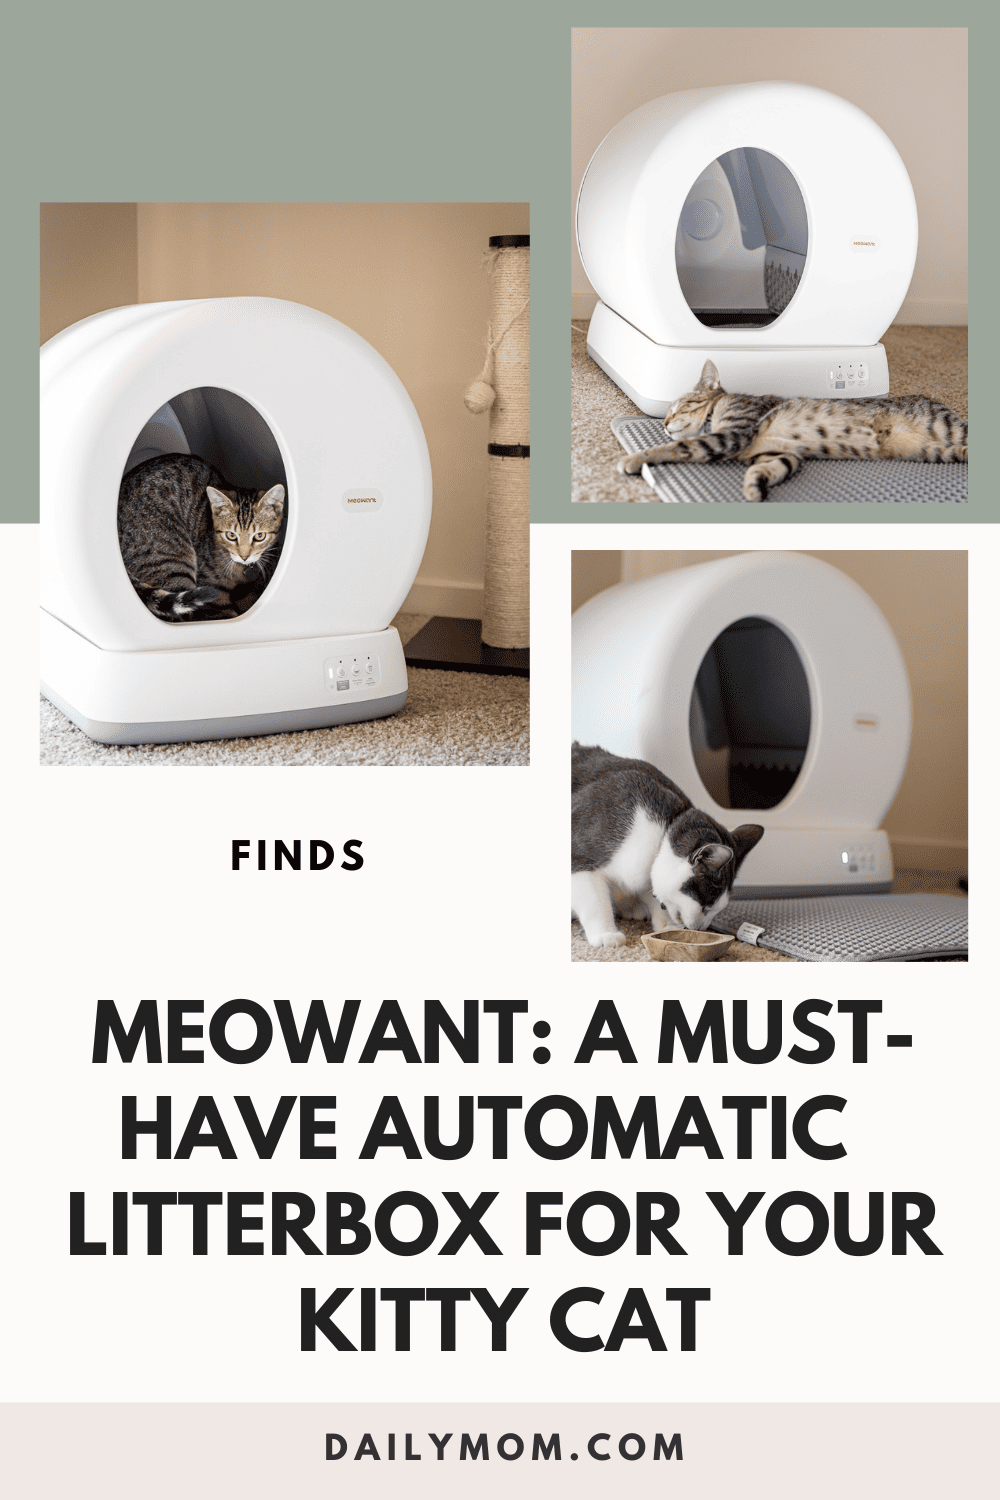 Daily Mom Parent Portal Meowwant 15